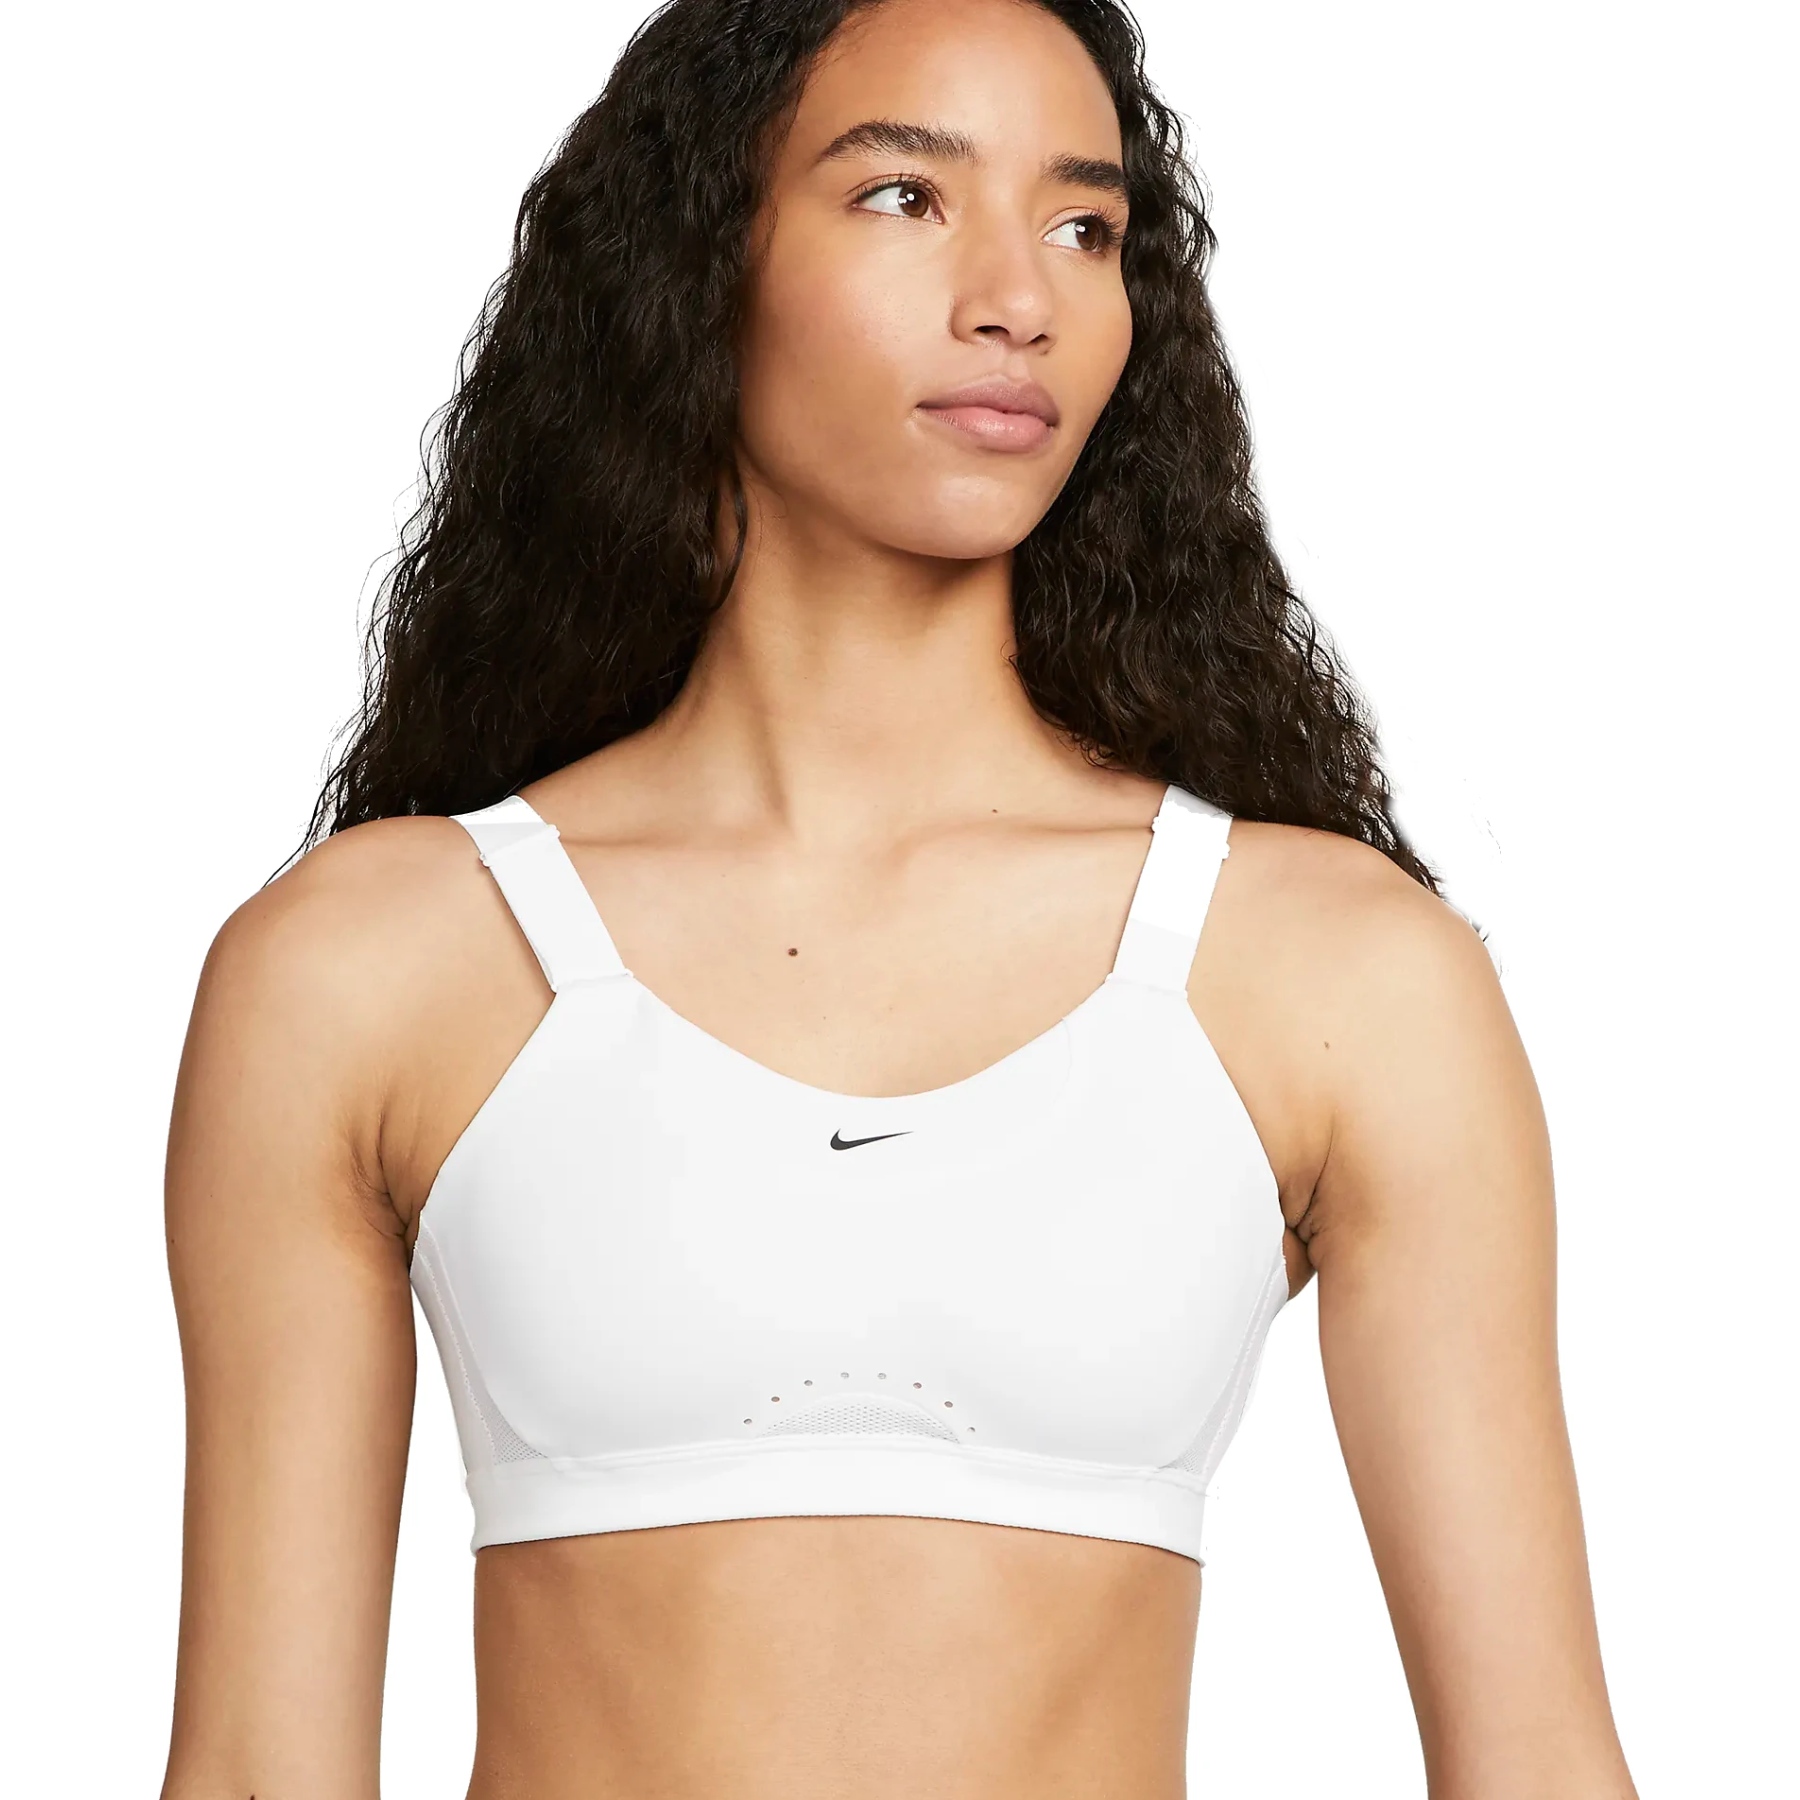 Produktbild von Nike Alpha Dri-FIT Sport-BH mit hoher Unterstützung Damen - Körbchengröße A-C - white/white/stone mauve/black DD0430-100